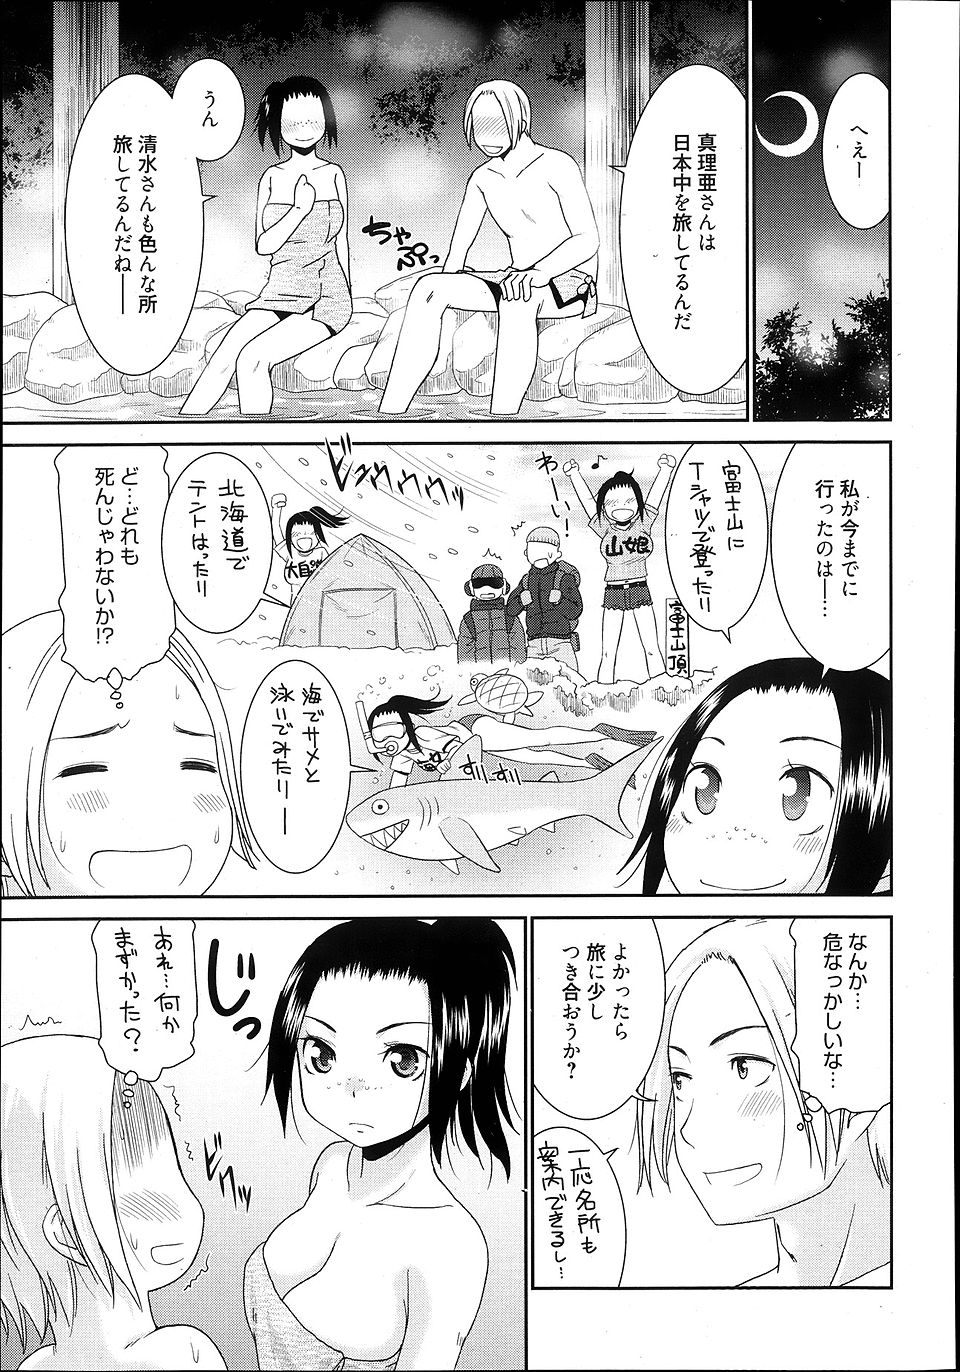 【エロ漫画】露天風呂で日本中を旅しているという女子に出会い意気投合した男が、お互い初めて同士だけど激しくいちゃラブ中出しセックスした♡